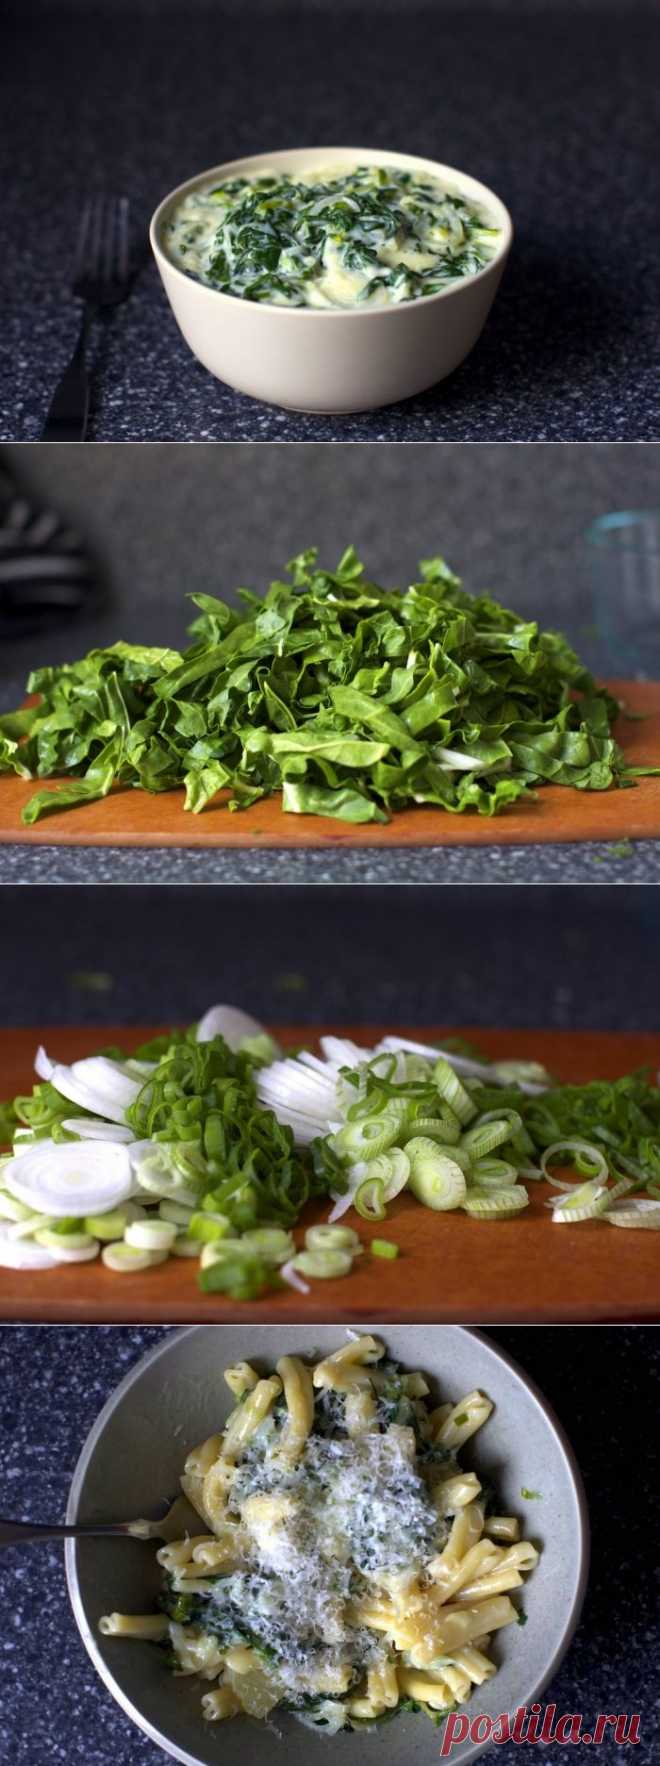 Сливочный салат с мангольдом, пошаговый фото рецепт